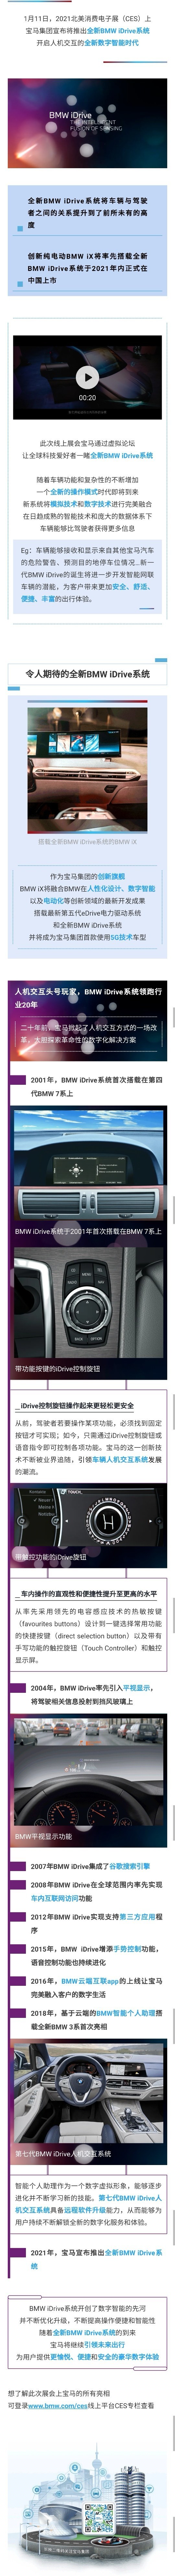 传承与创新  |  全新BMW iDrive来了